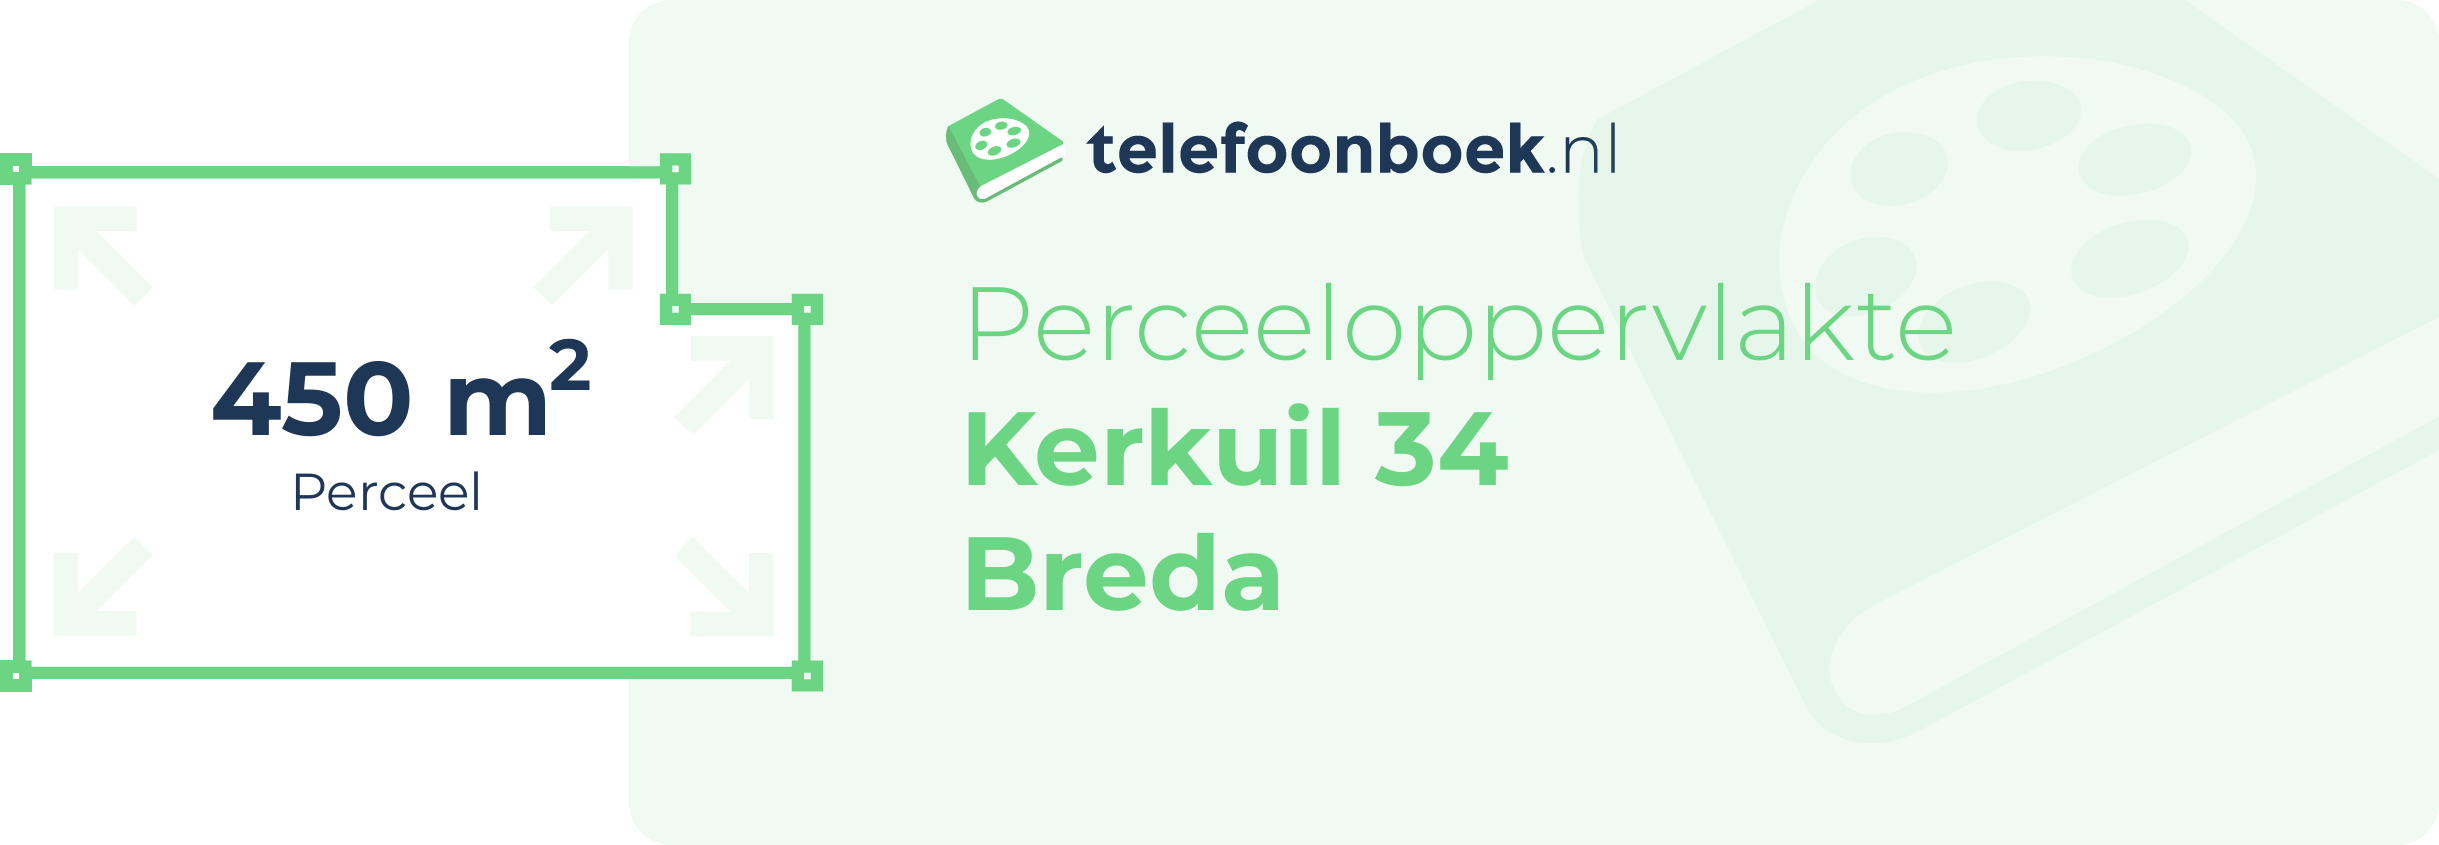 Perceeloppervlakte Kerkuil 34 Breda